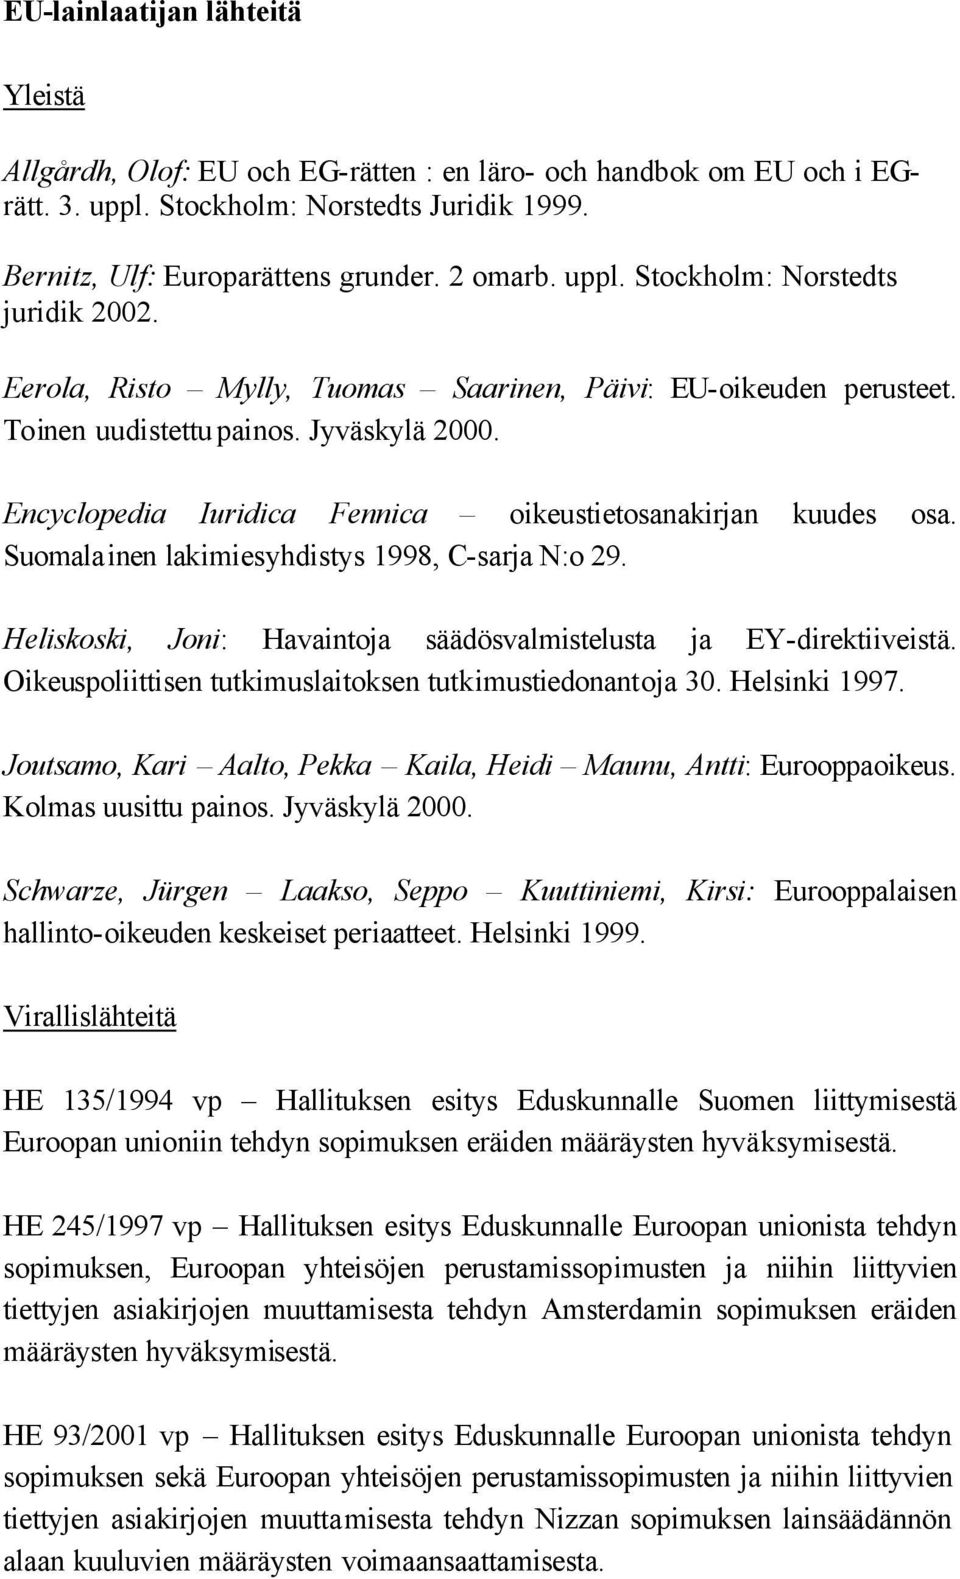 Encyclopedia Iuridica Fennica oikeustietosanakirjan kuudes osa. Suomalainen lakimiesyhdistys 1998, C-sarja N:o 29. Heliskoski, Joni: Havaintoja säädösvalmistelusta ja EY-direktiiveistä.